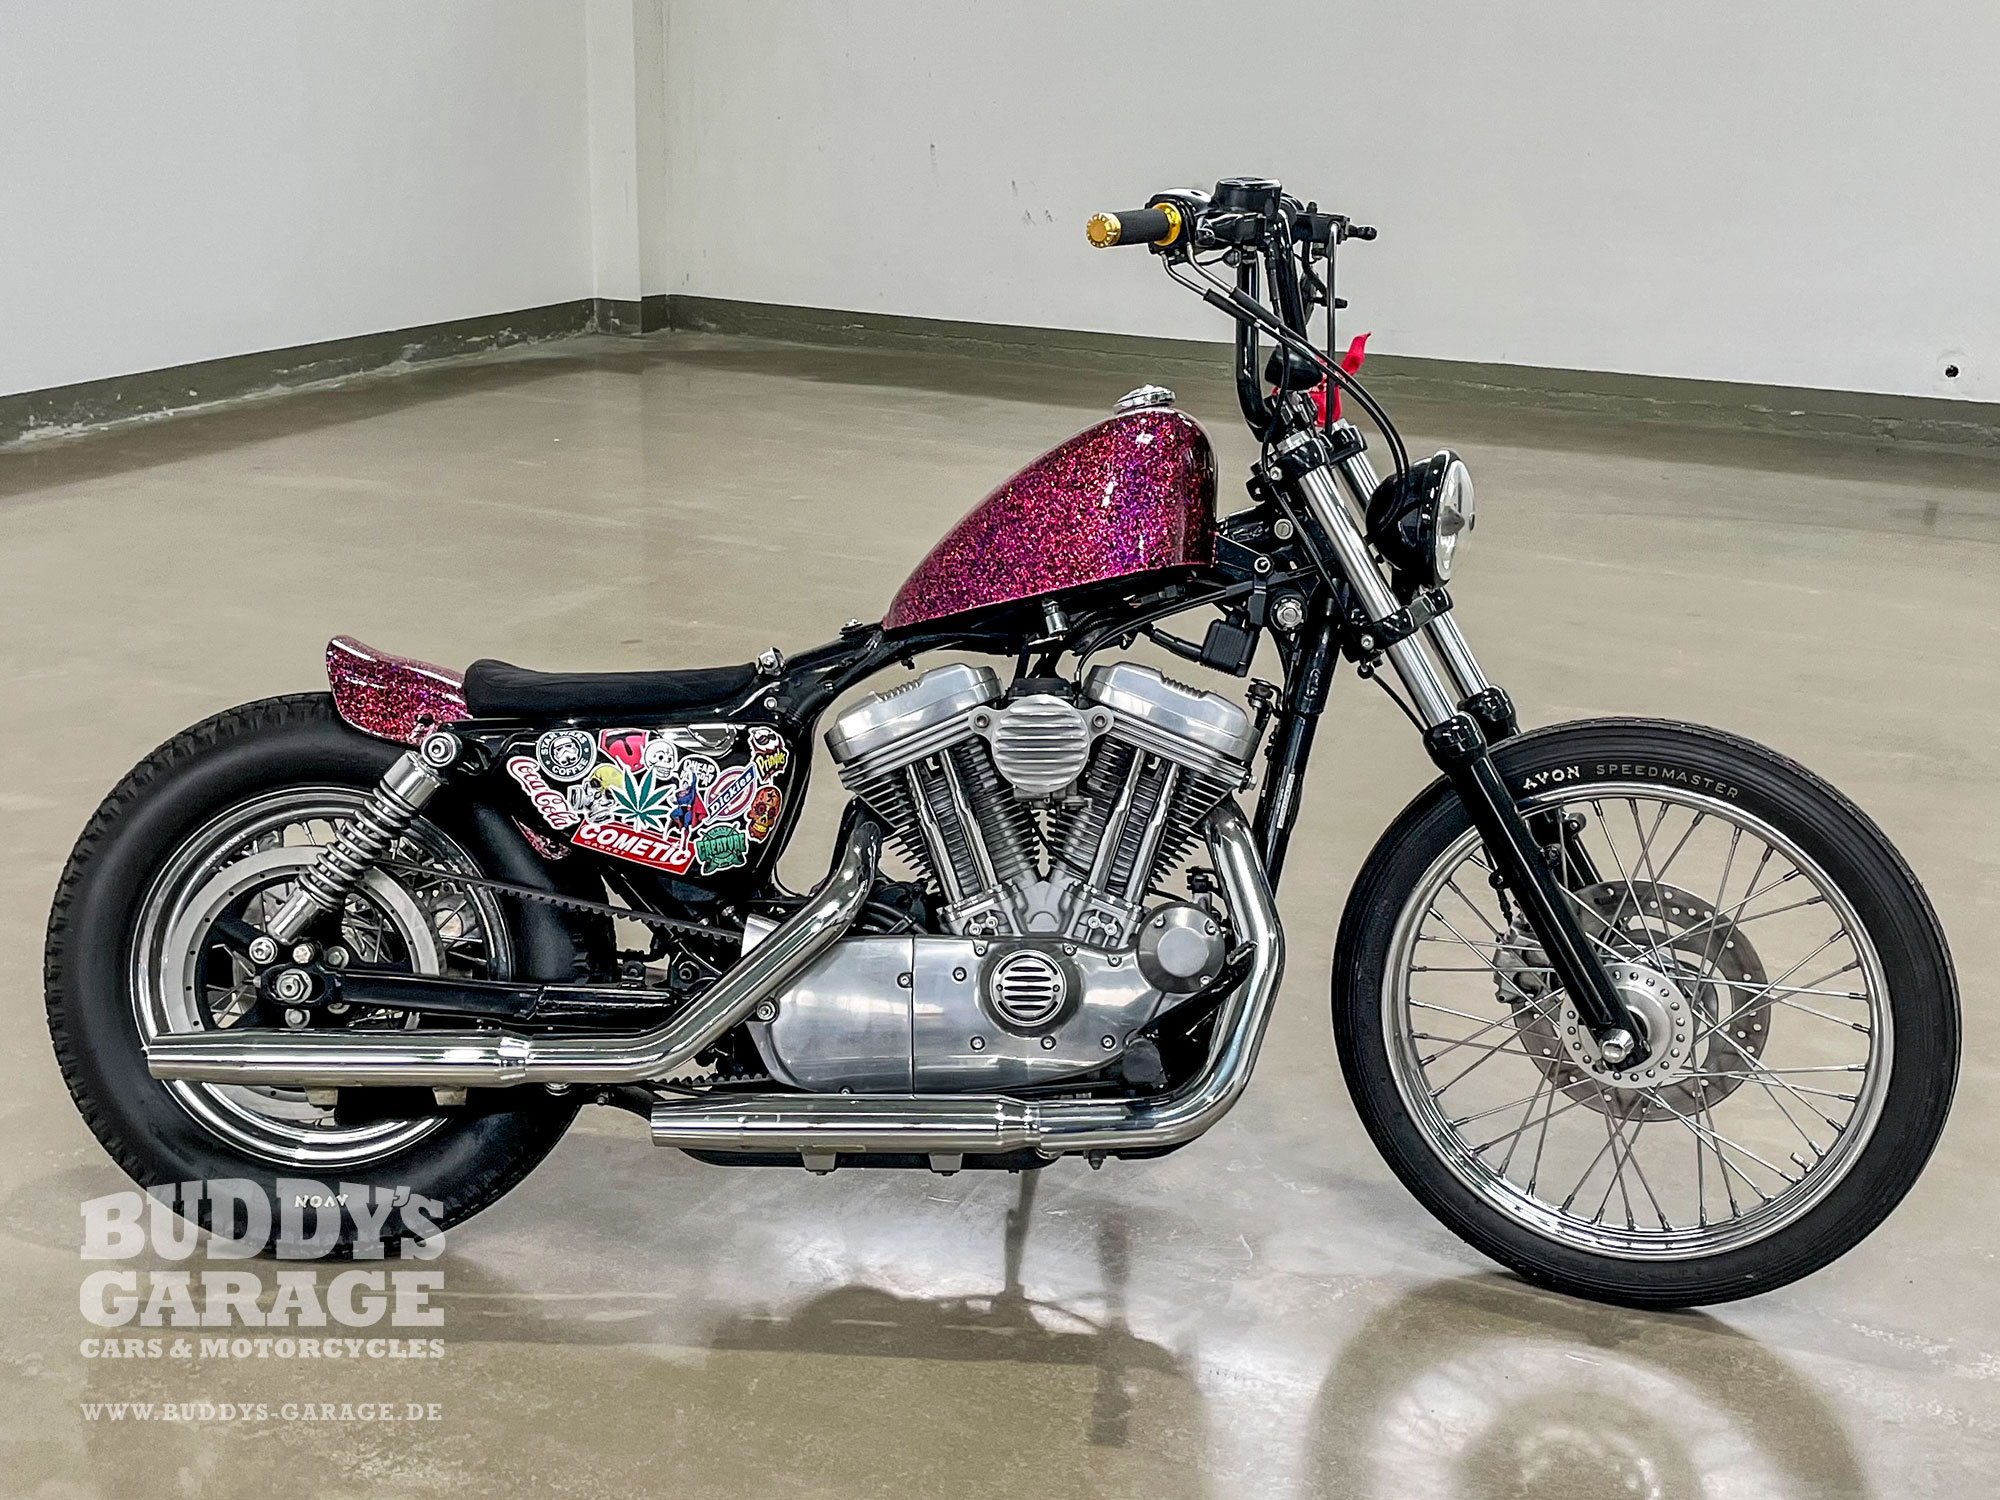 Harley Davidson Werkstatt | Buddy's Garage Bad Oeynhausen